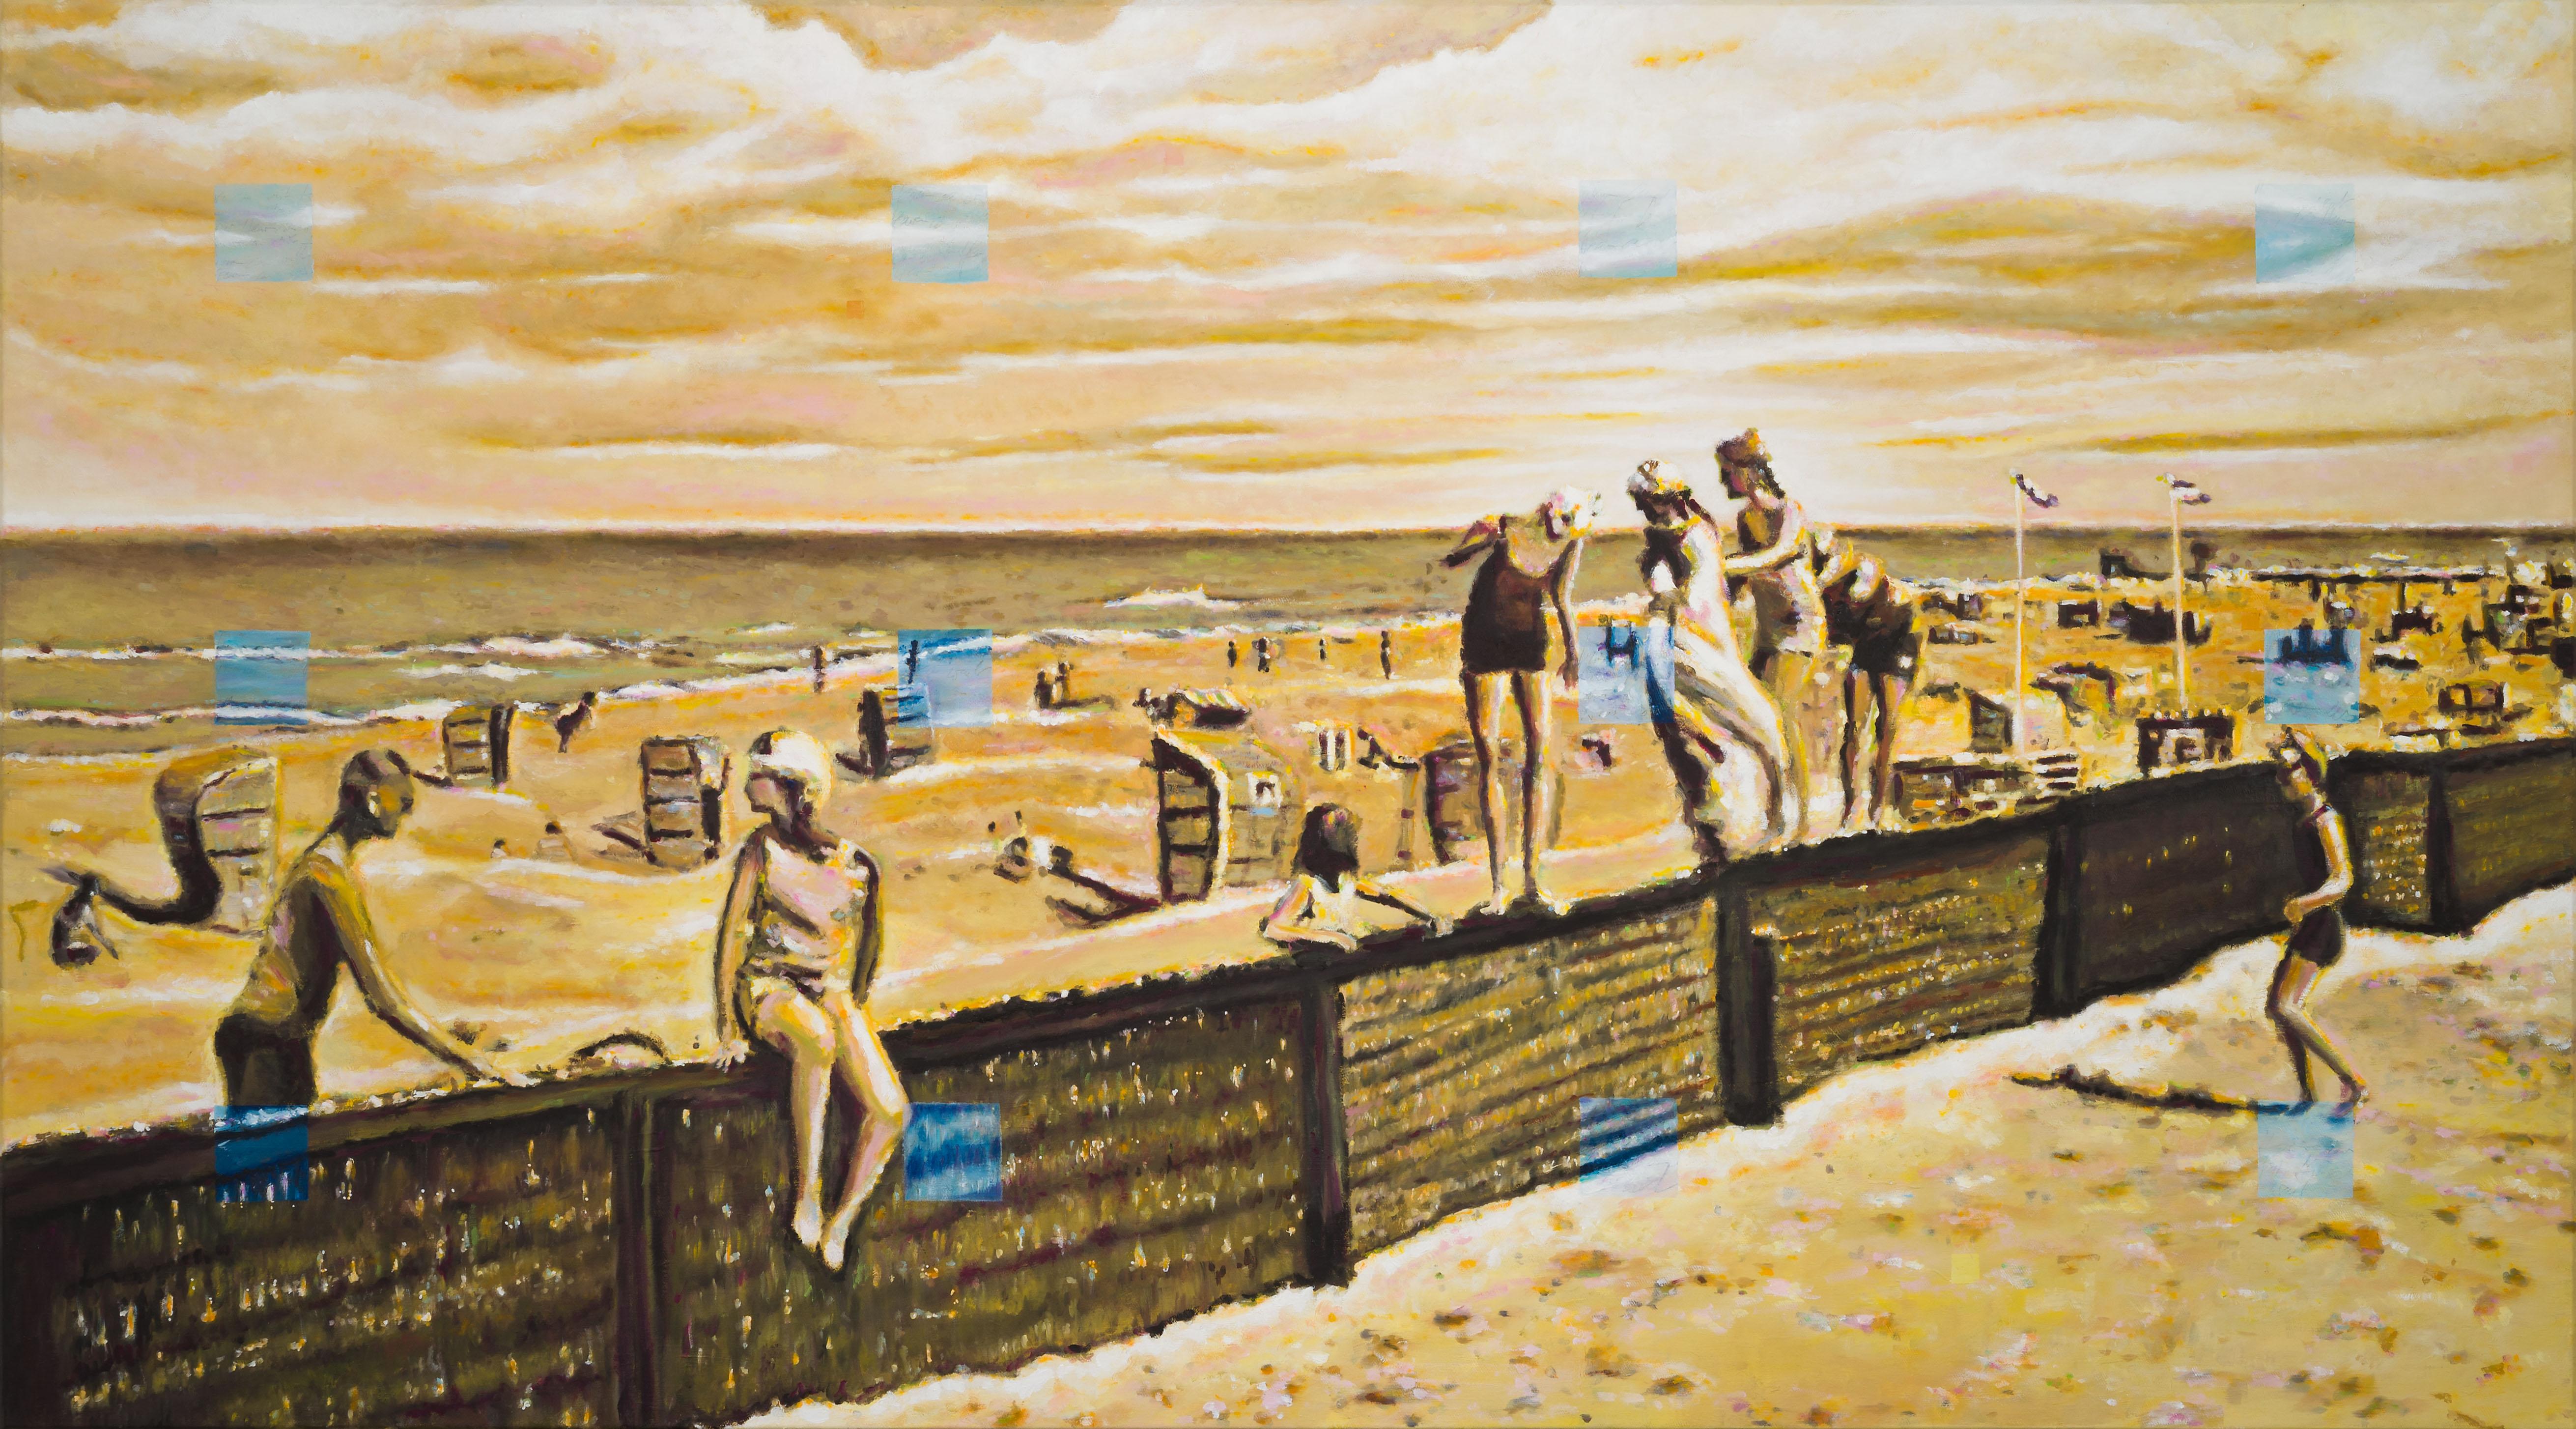 Figurative Painting Michael Pröpper - Heaven Can Wait - scène de danse contemporaine sur plage - peinture de paysage figurative